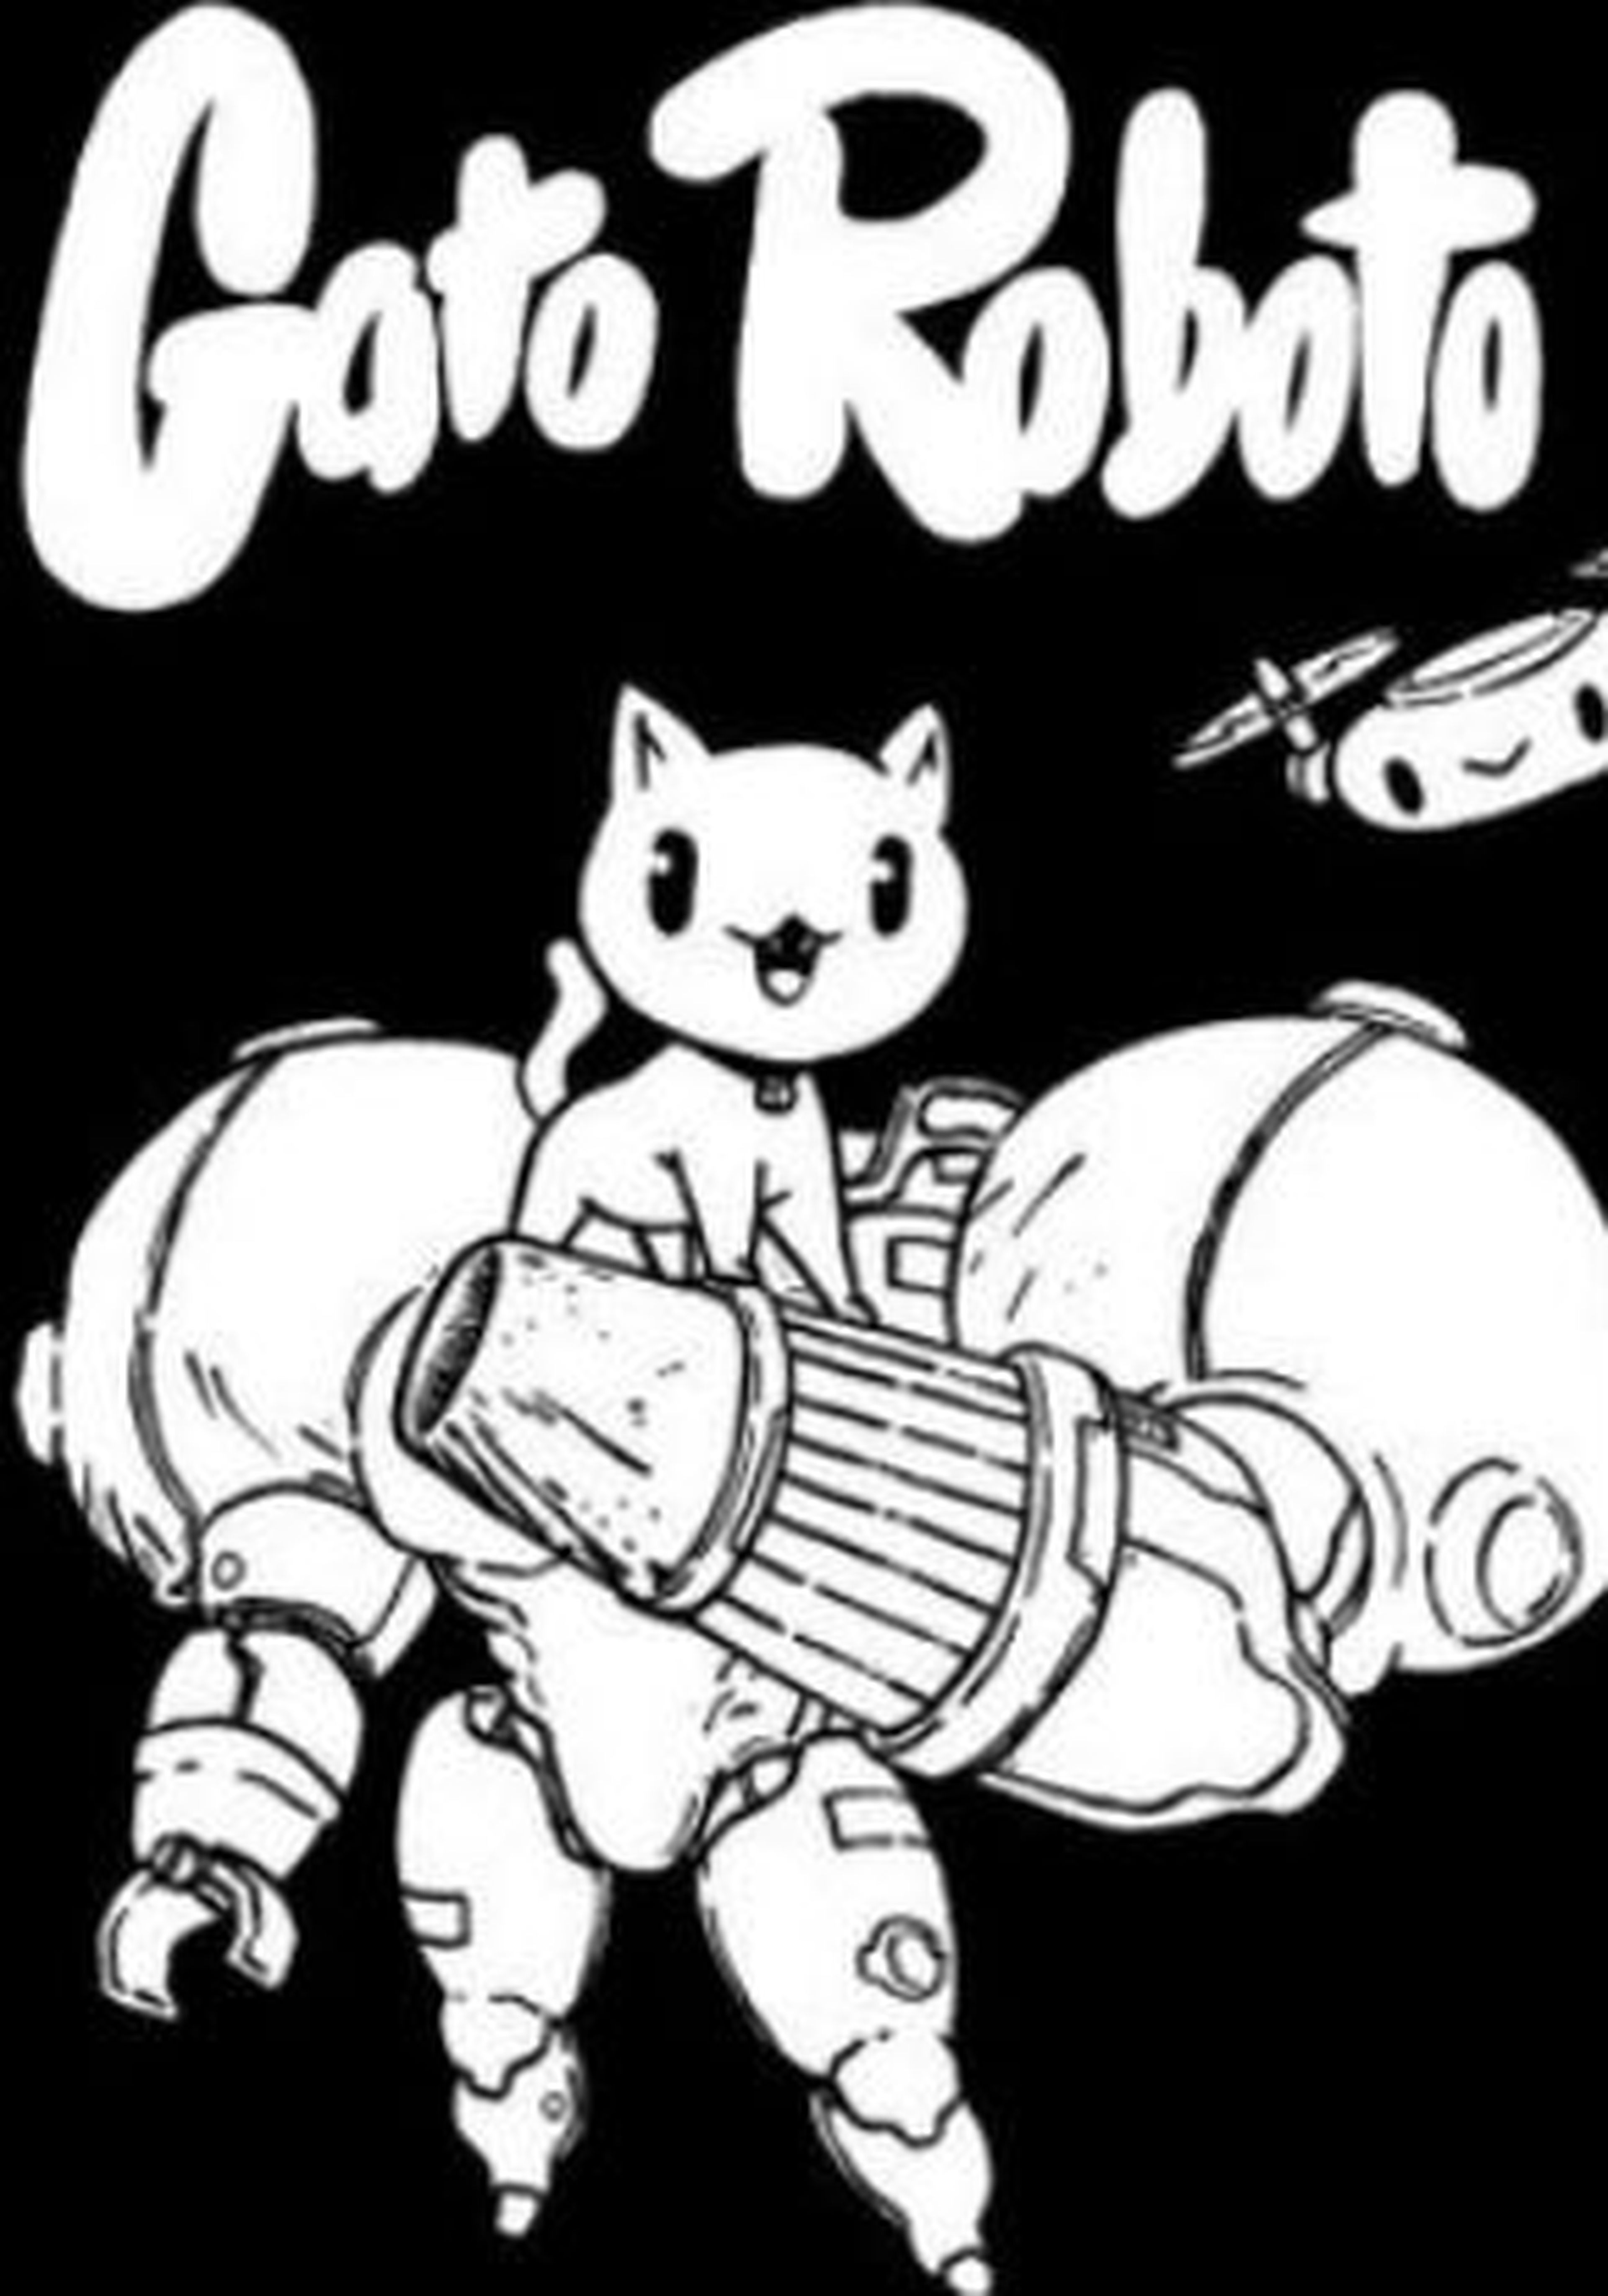 Carátula de Gato Roboto